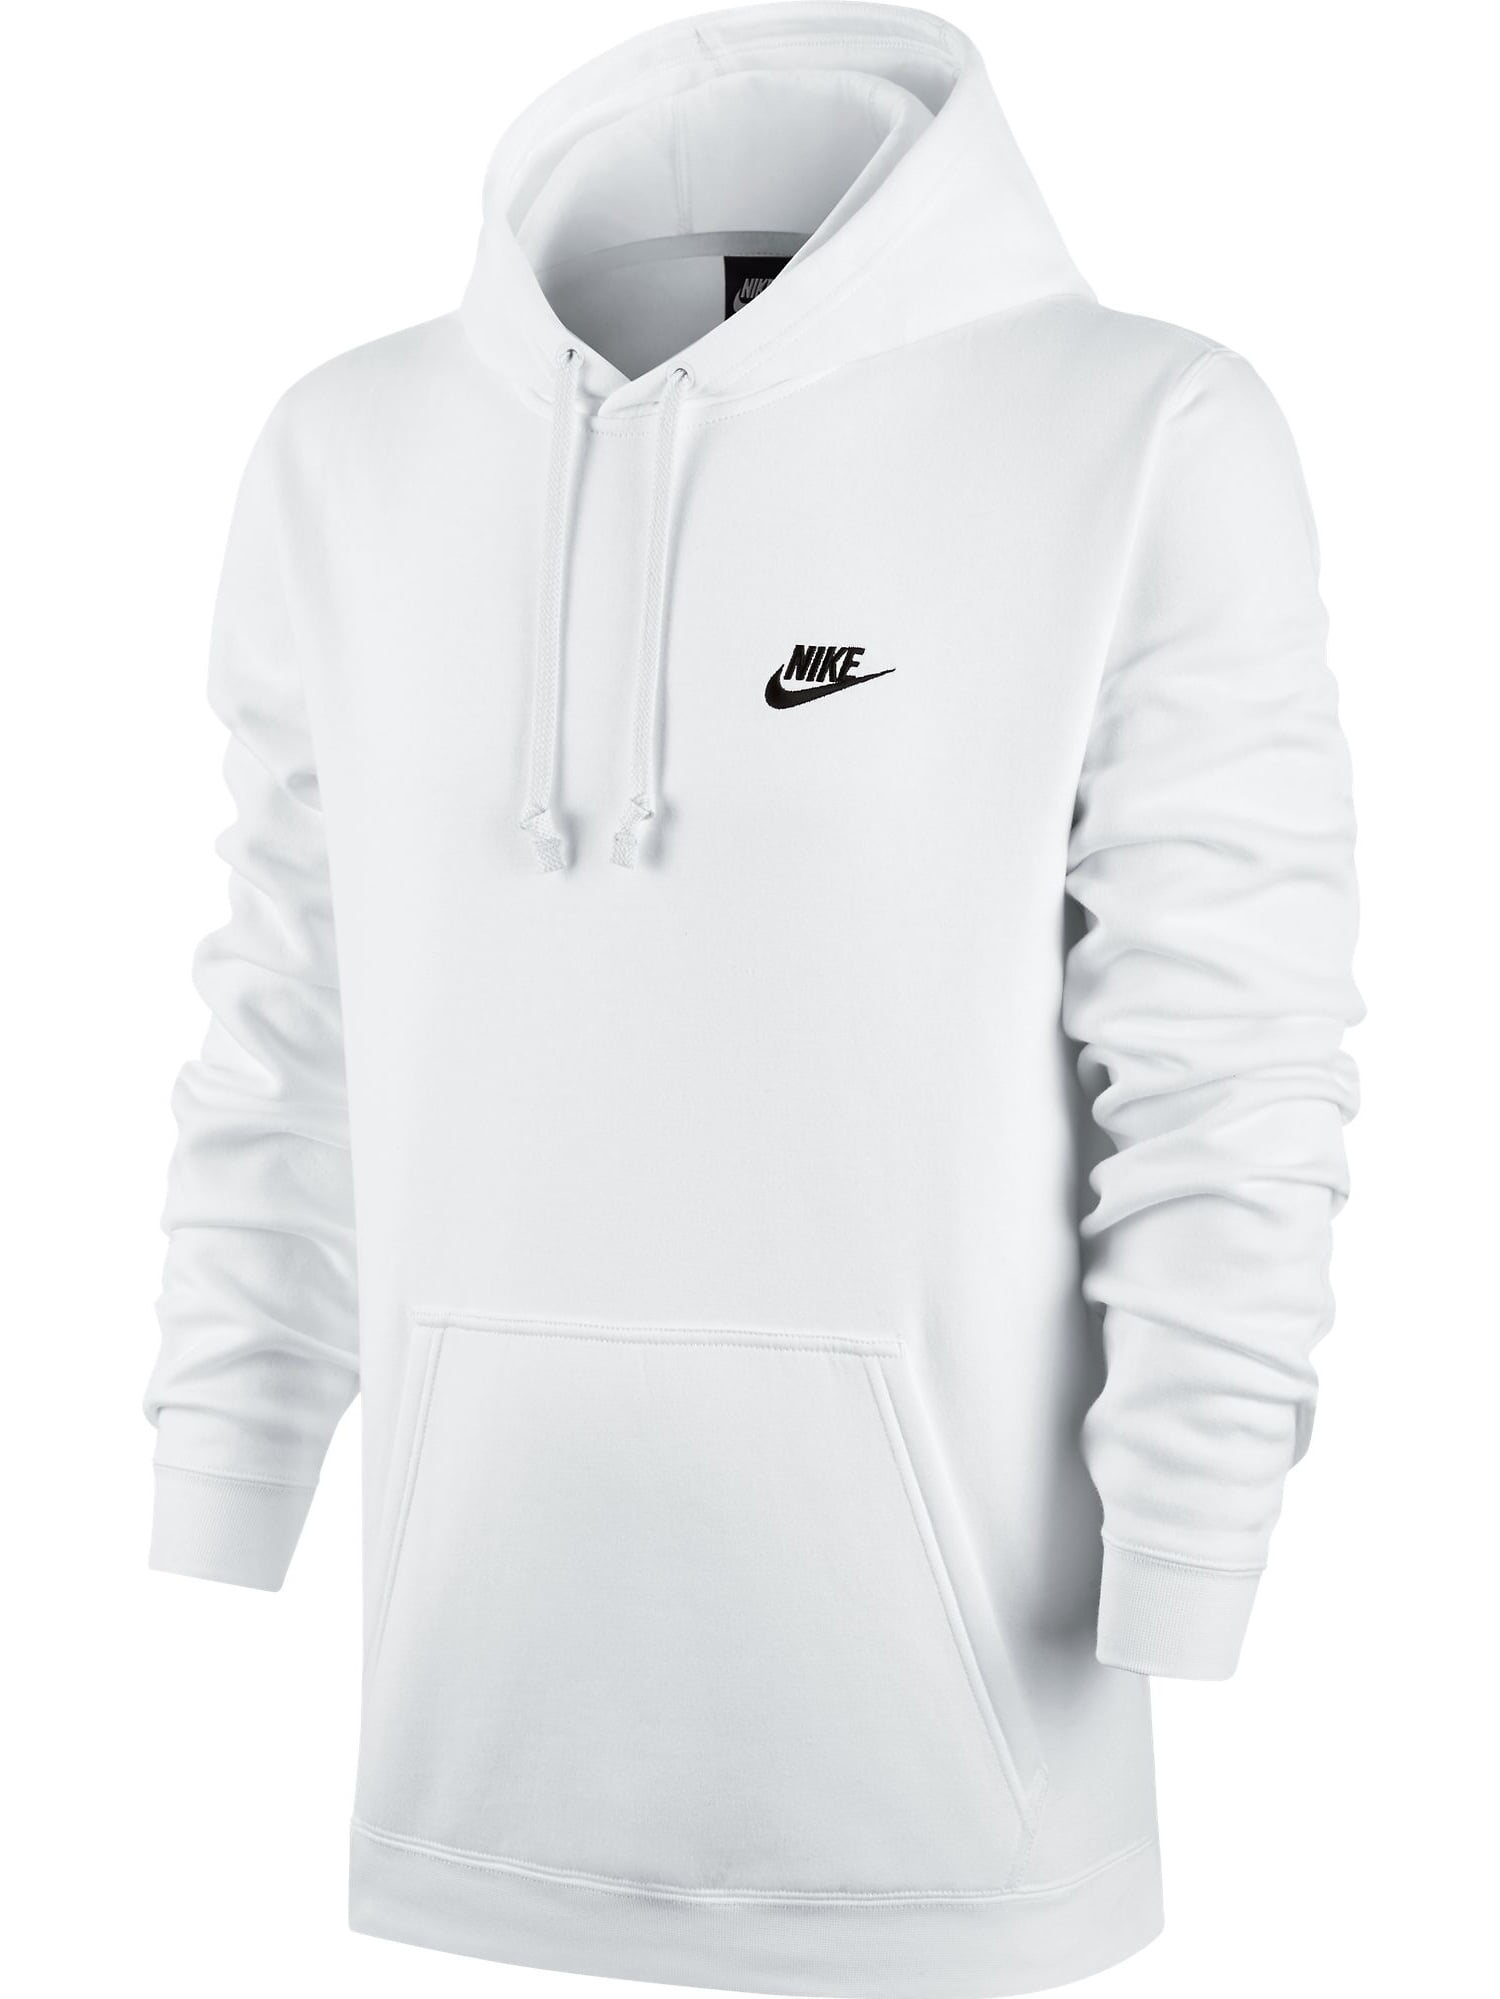  Nike  Nike  Club Fleece Pullover Longsleeve Men s Hoodie  